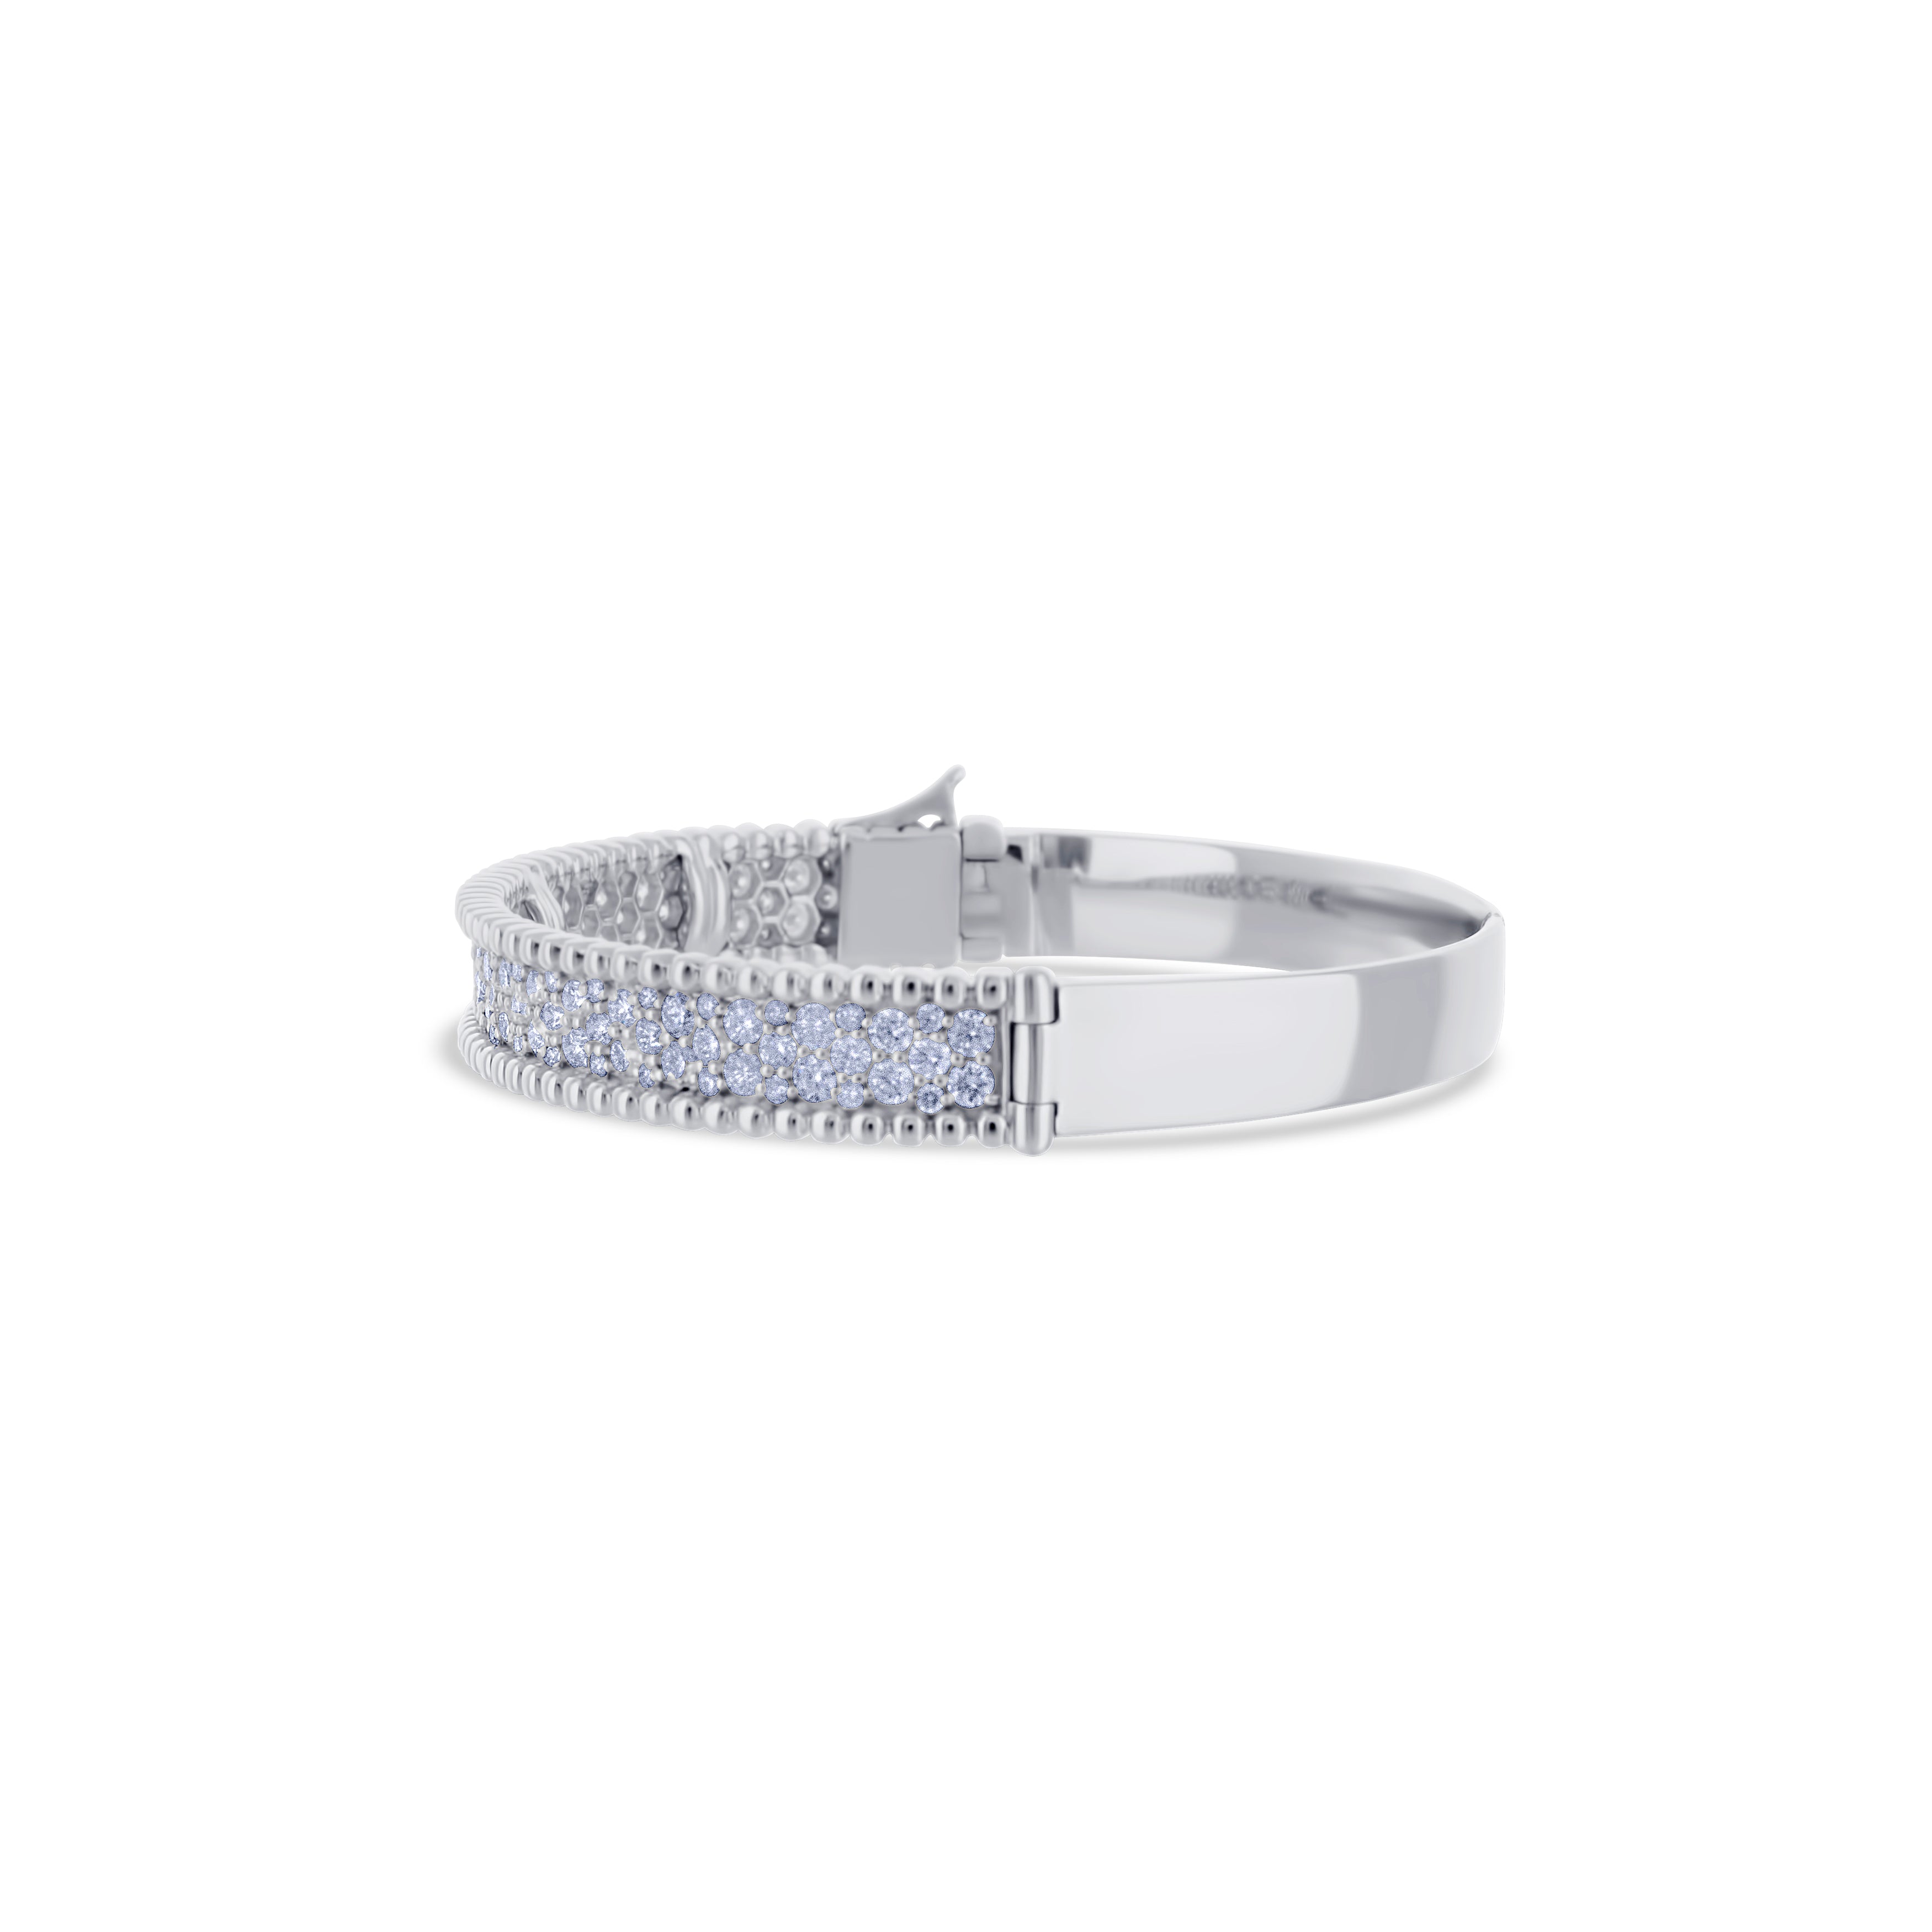 18K White Gold Double Diamond Row with Bead Design Bracelet